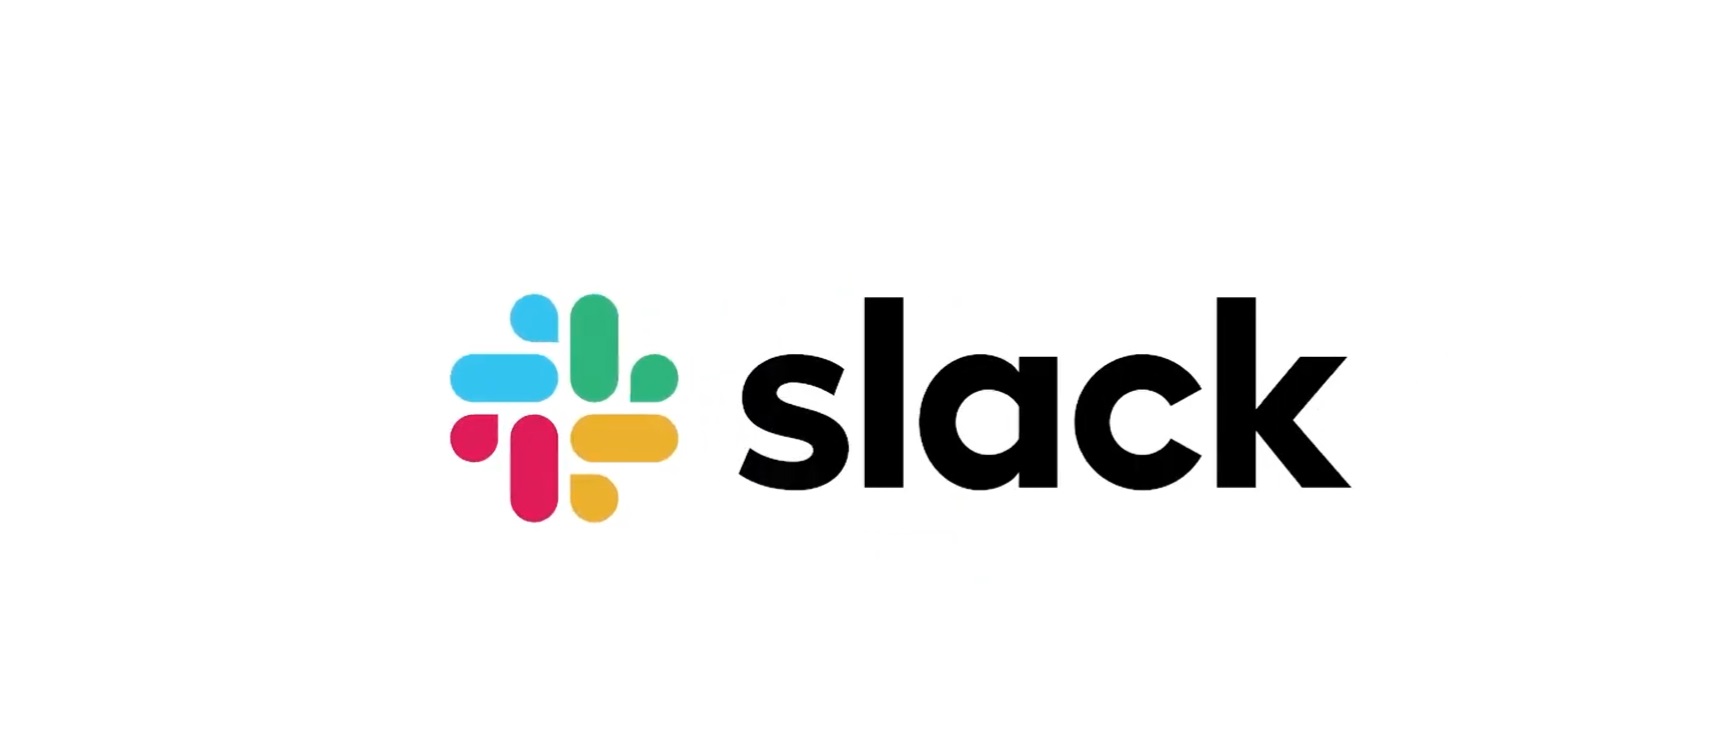 slack, salesforce, programapublicidad